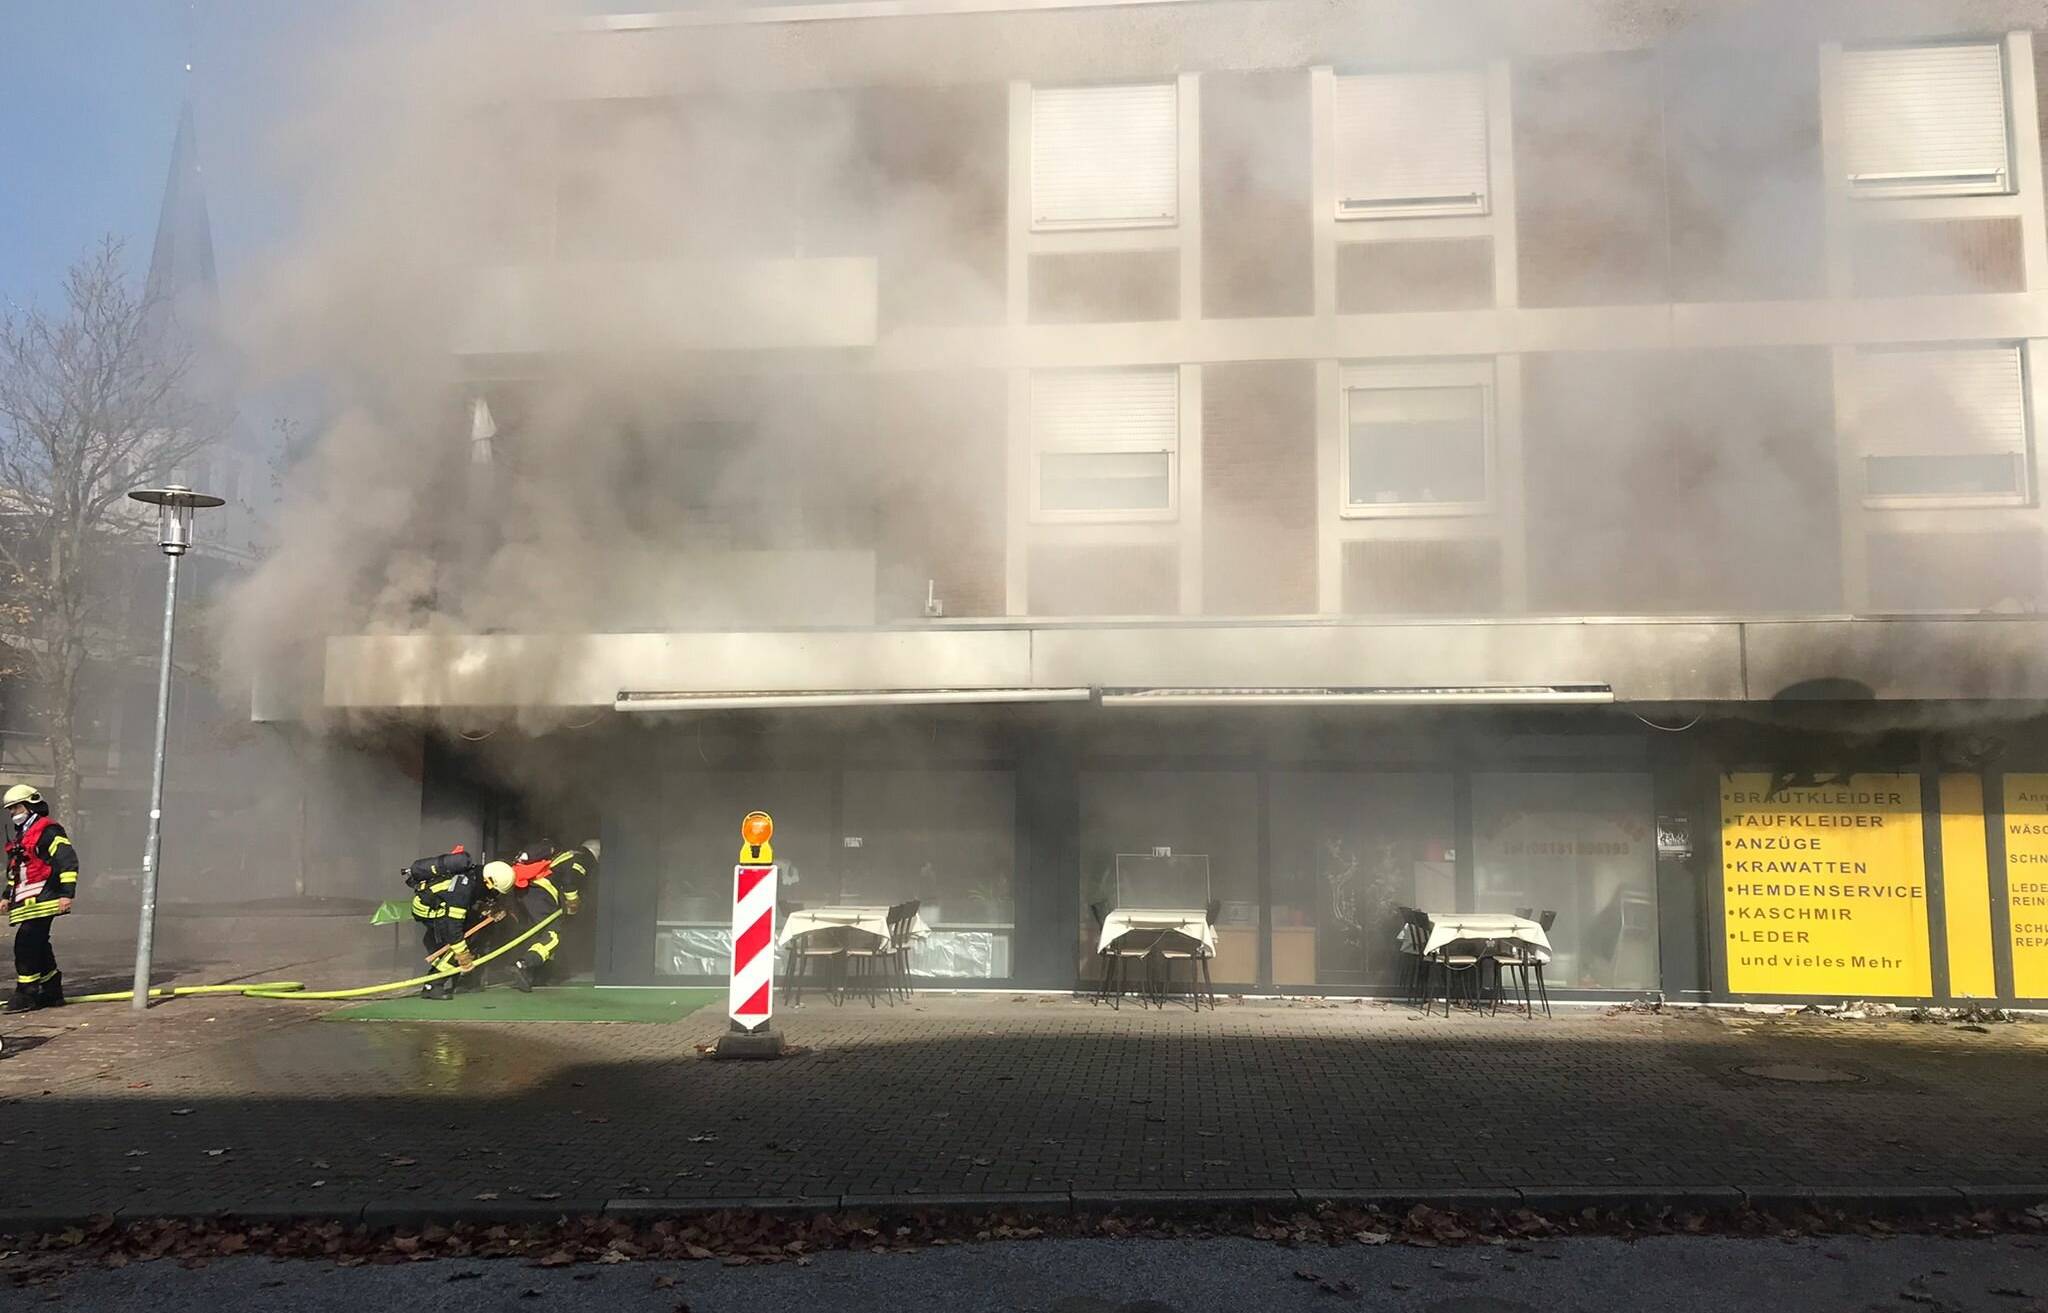  Im Erdgeschoss eines Wohn- und Geschäftshauses in Büttgen brannte es am Samstag im Küchenbereich eines Schnell-Restaurant. 